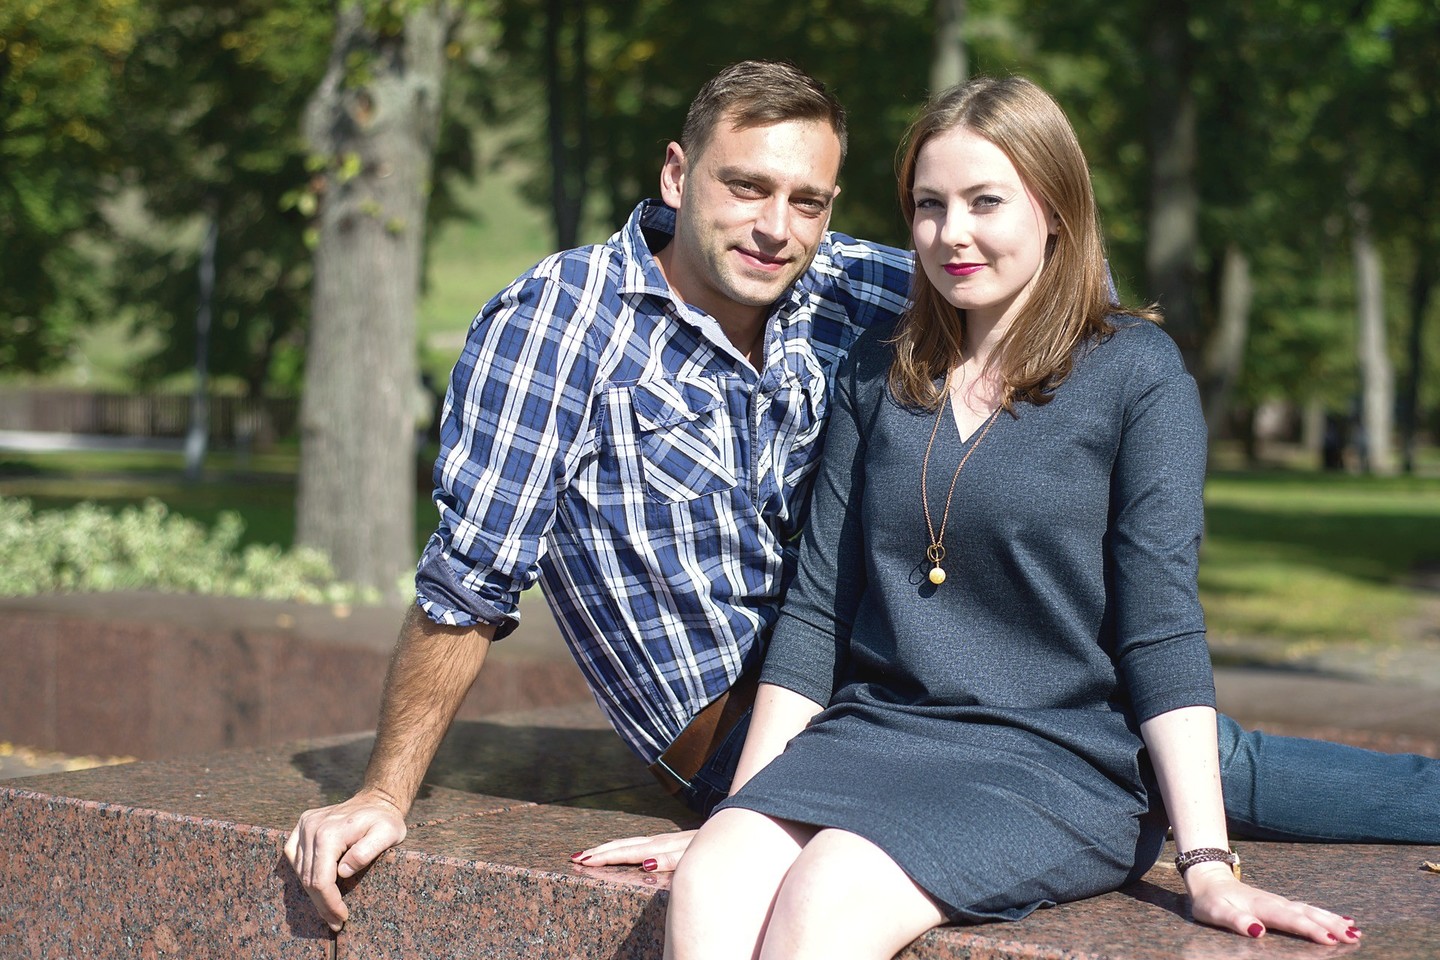 Aistė ir Justinas Strelčiūnai susituokė praėjus mažiau nei metams nuo kaulų čiulpų transplantacijos.<br>J.Stacevičiaus nuotr.